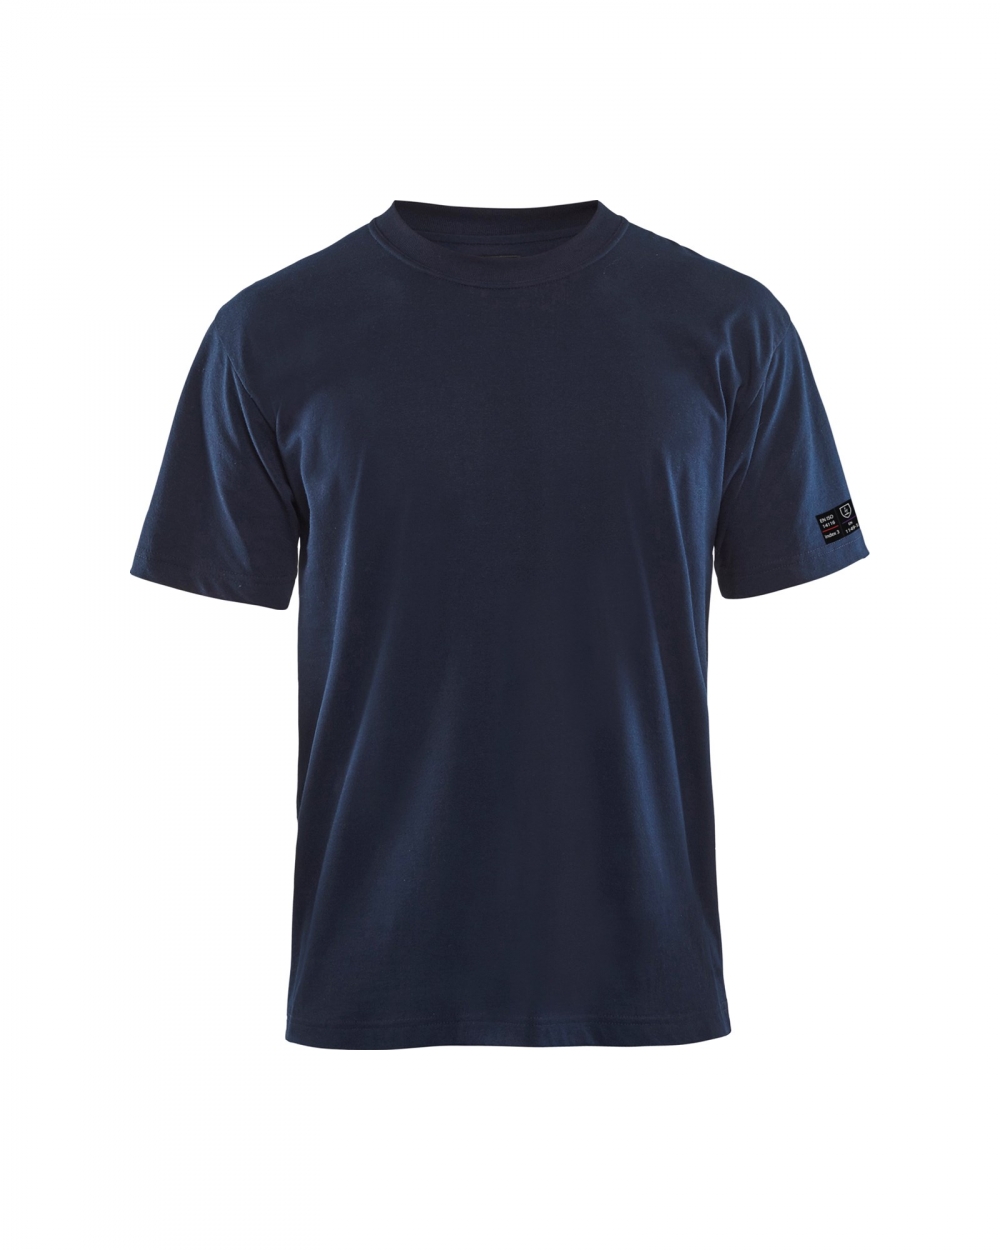 Flammehemmende t-skjorte med korte armer. Sertifisert i henhold til EN ISO 14116, Index 3/5H/40, EN 1149-5.